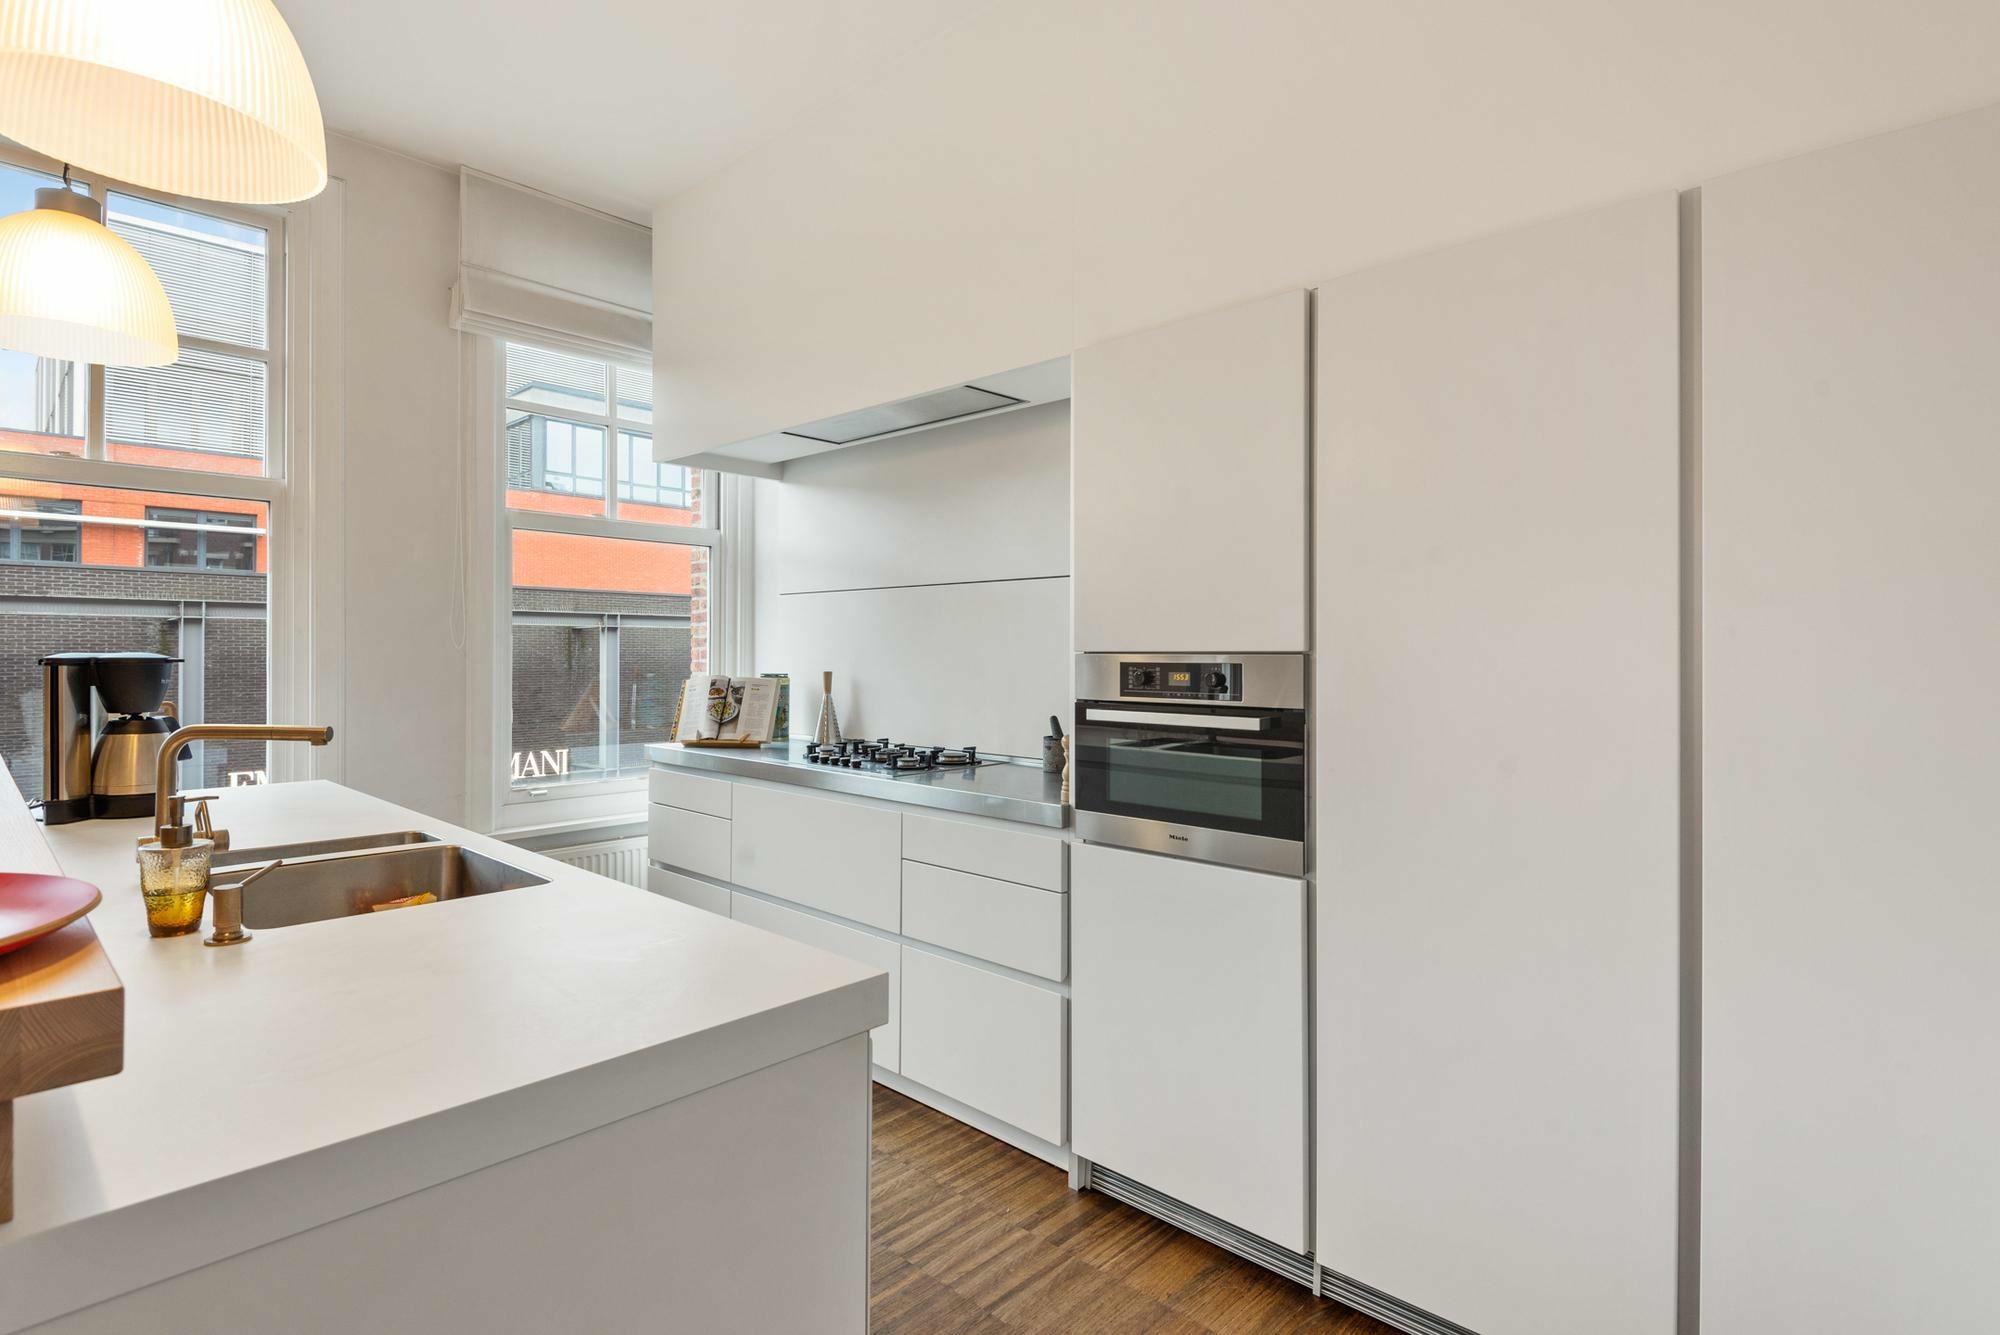 Woning / appartement - Antwerp - 